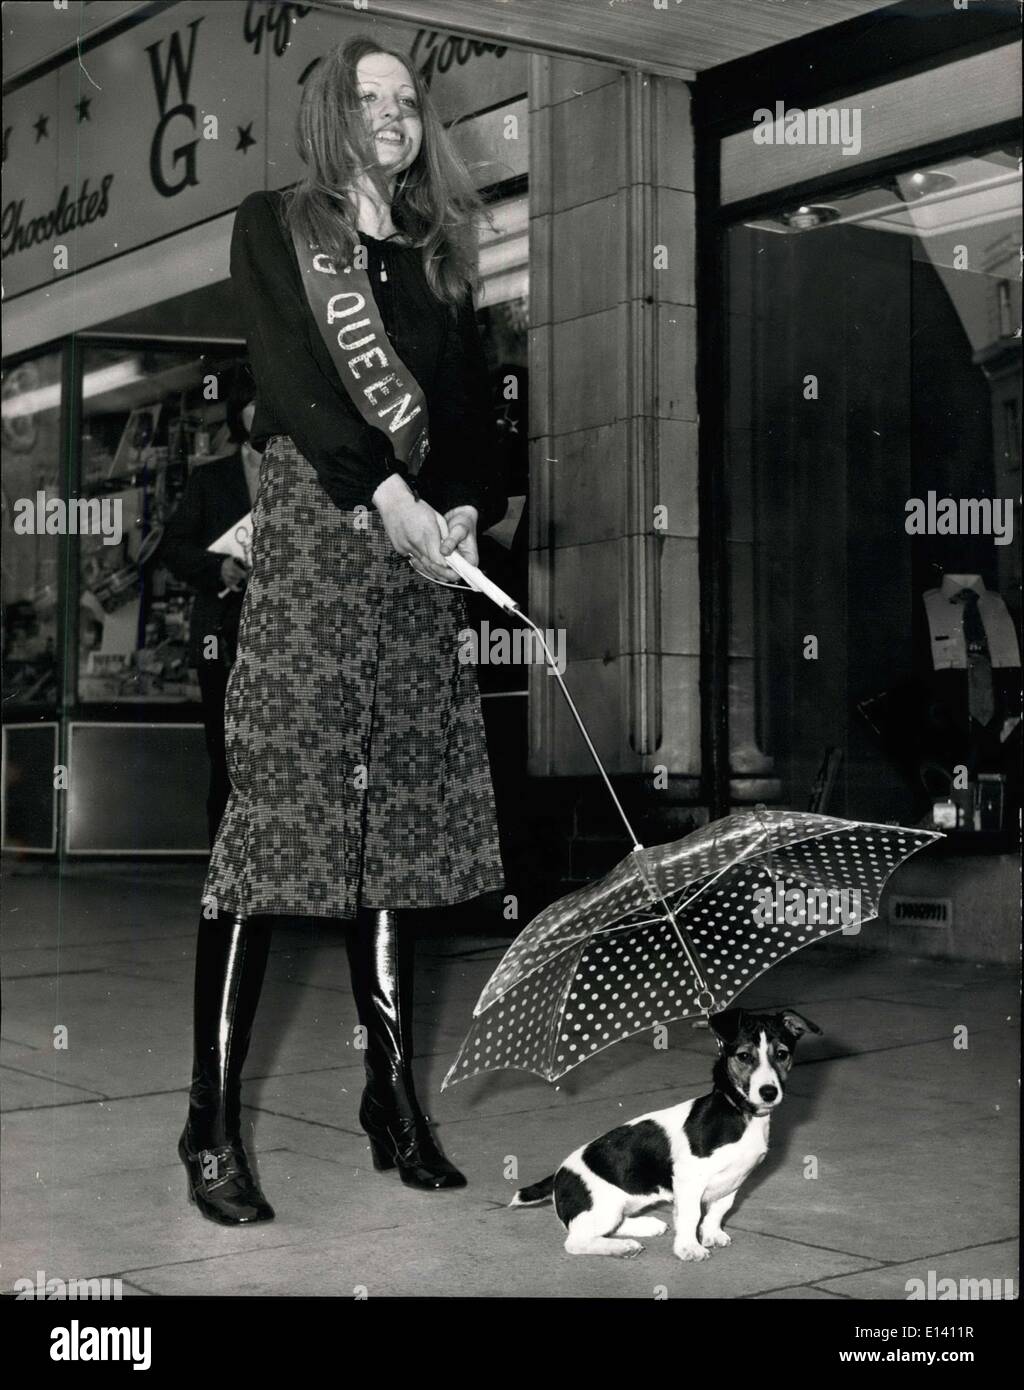 31. März 2012 - The Ultimate Dog führt: Eine Änderung von Mänteln, die einige Menschen auf ihre Hunde, das ist Regenschirm-Blei, beschrieben von den Machern als die ultimative Hund führt. Es zeigte sich an der internationalen Fancy waren Fair, in Blackpool statt. Stockfoto